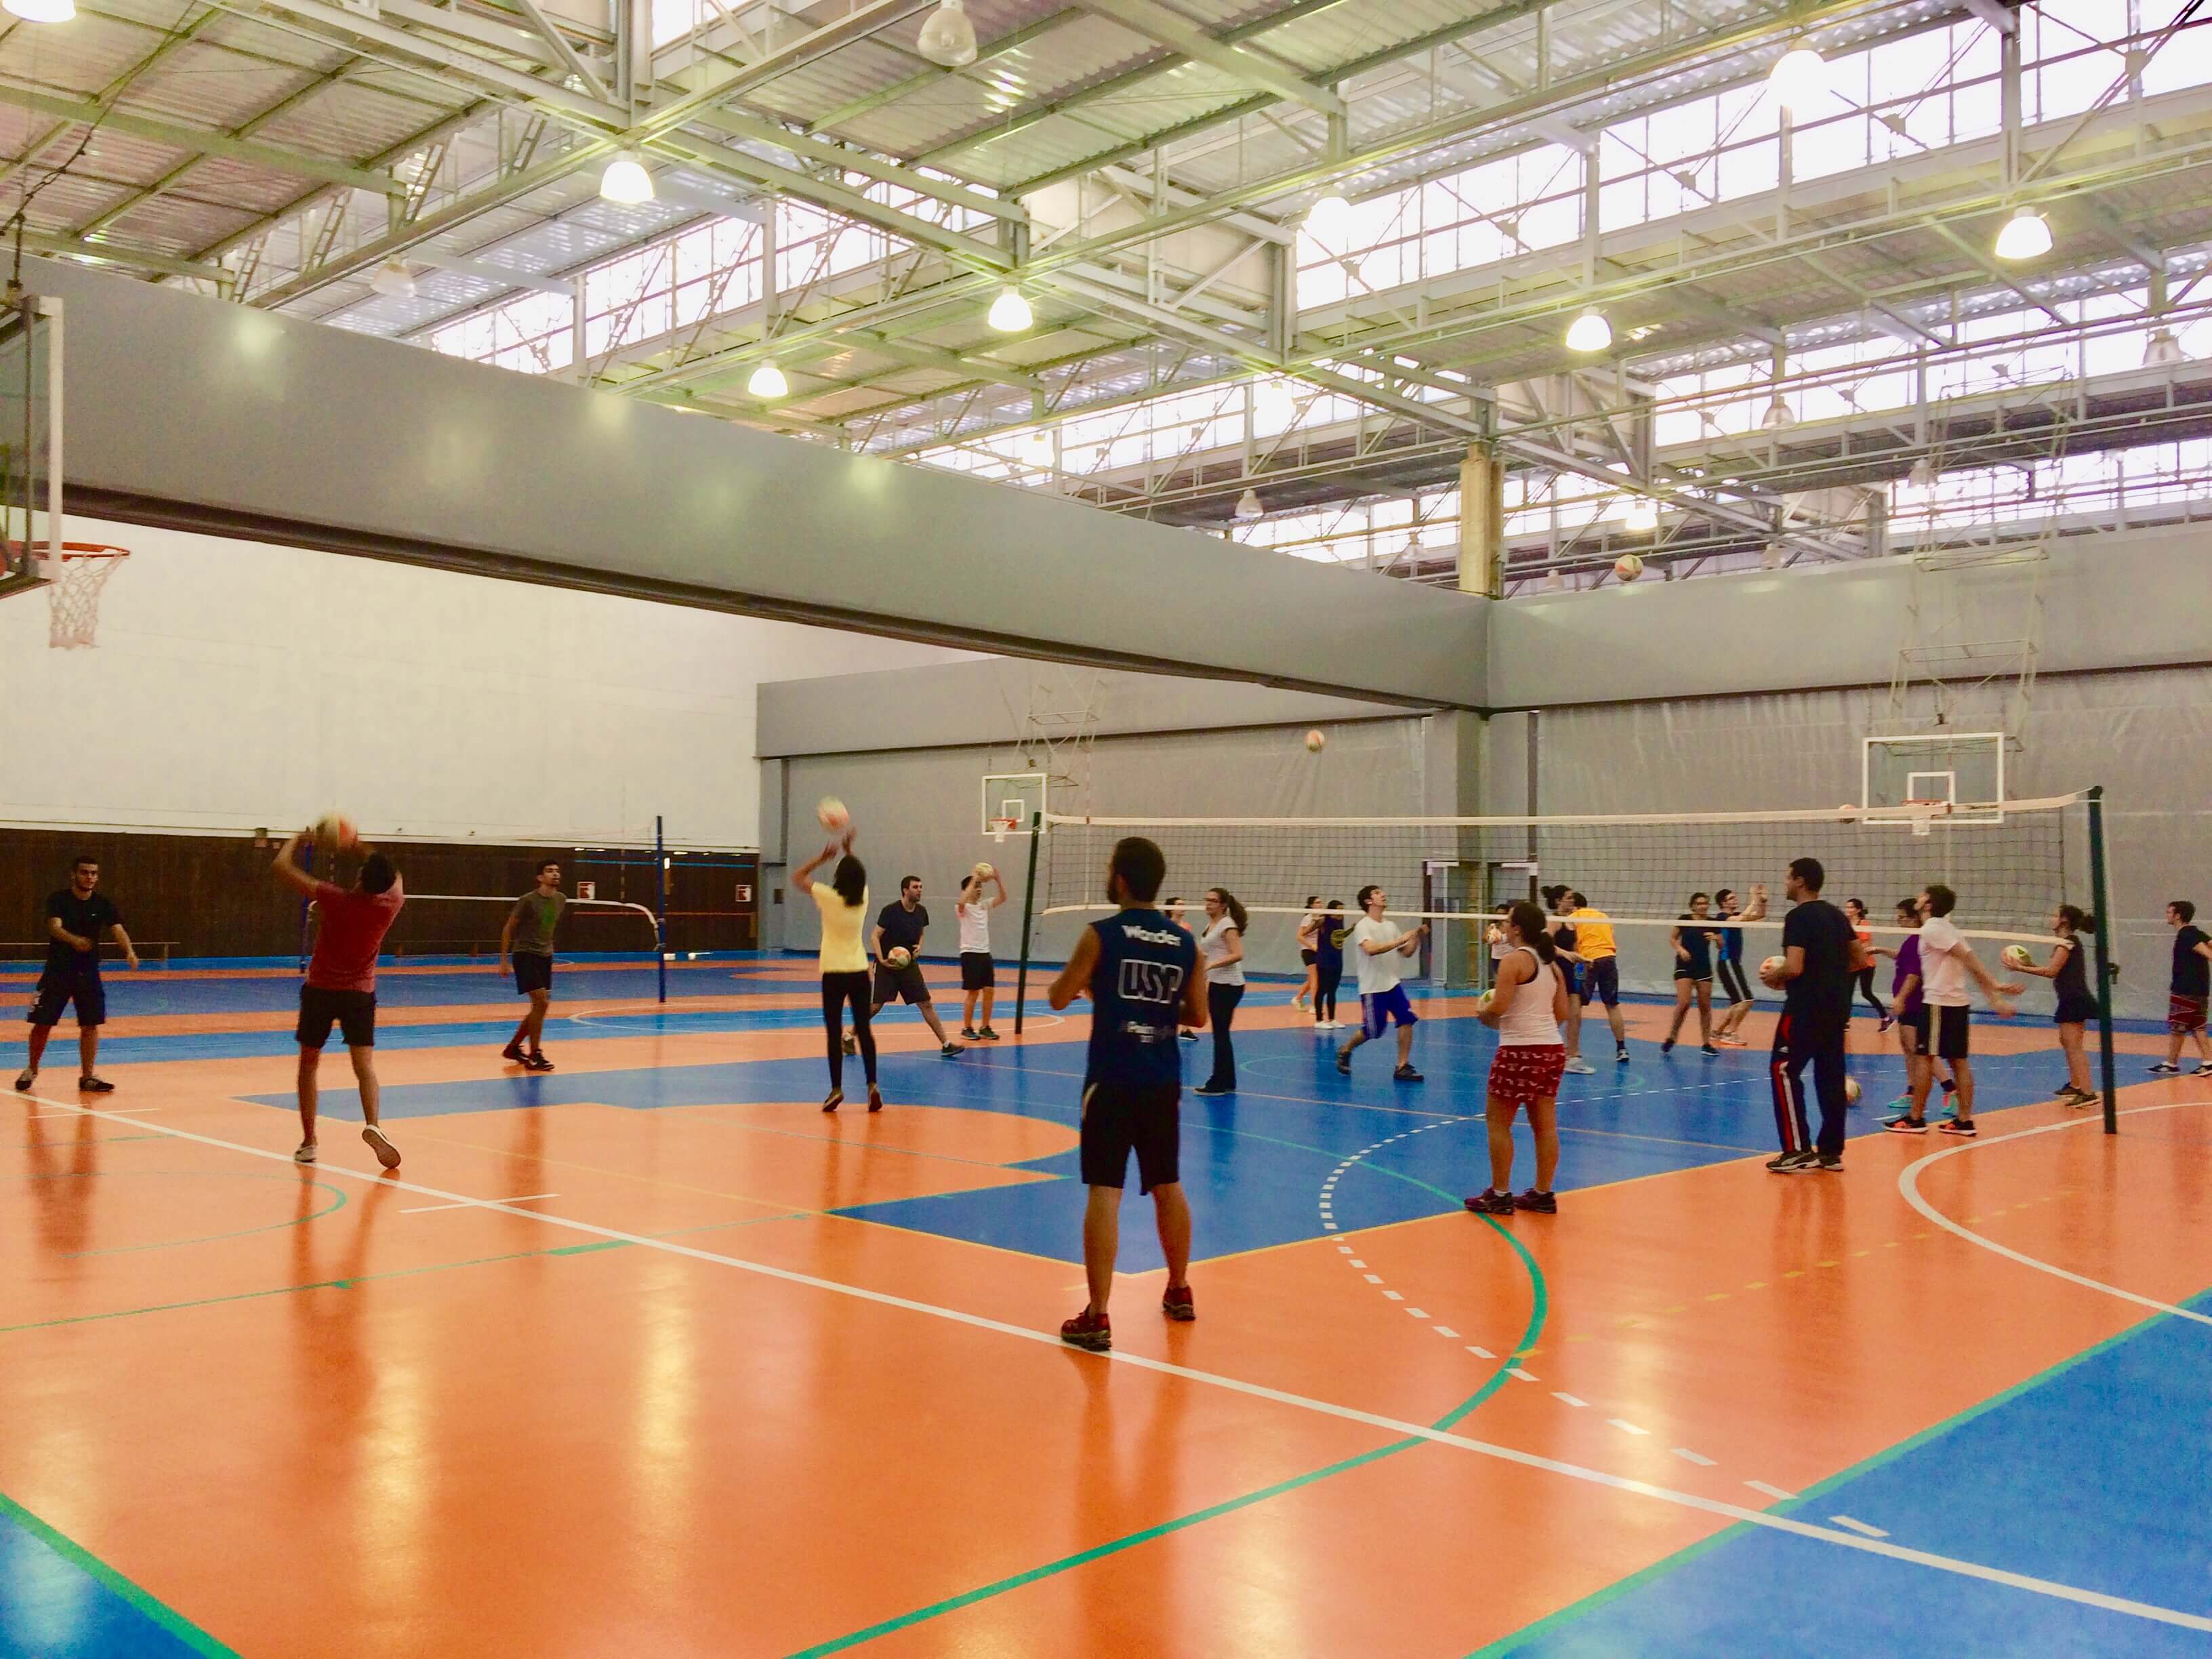 Evento on-line e gratuito vai ensinar como jogar voleibol – Jornal da USP